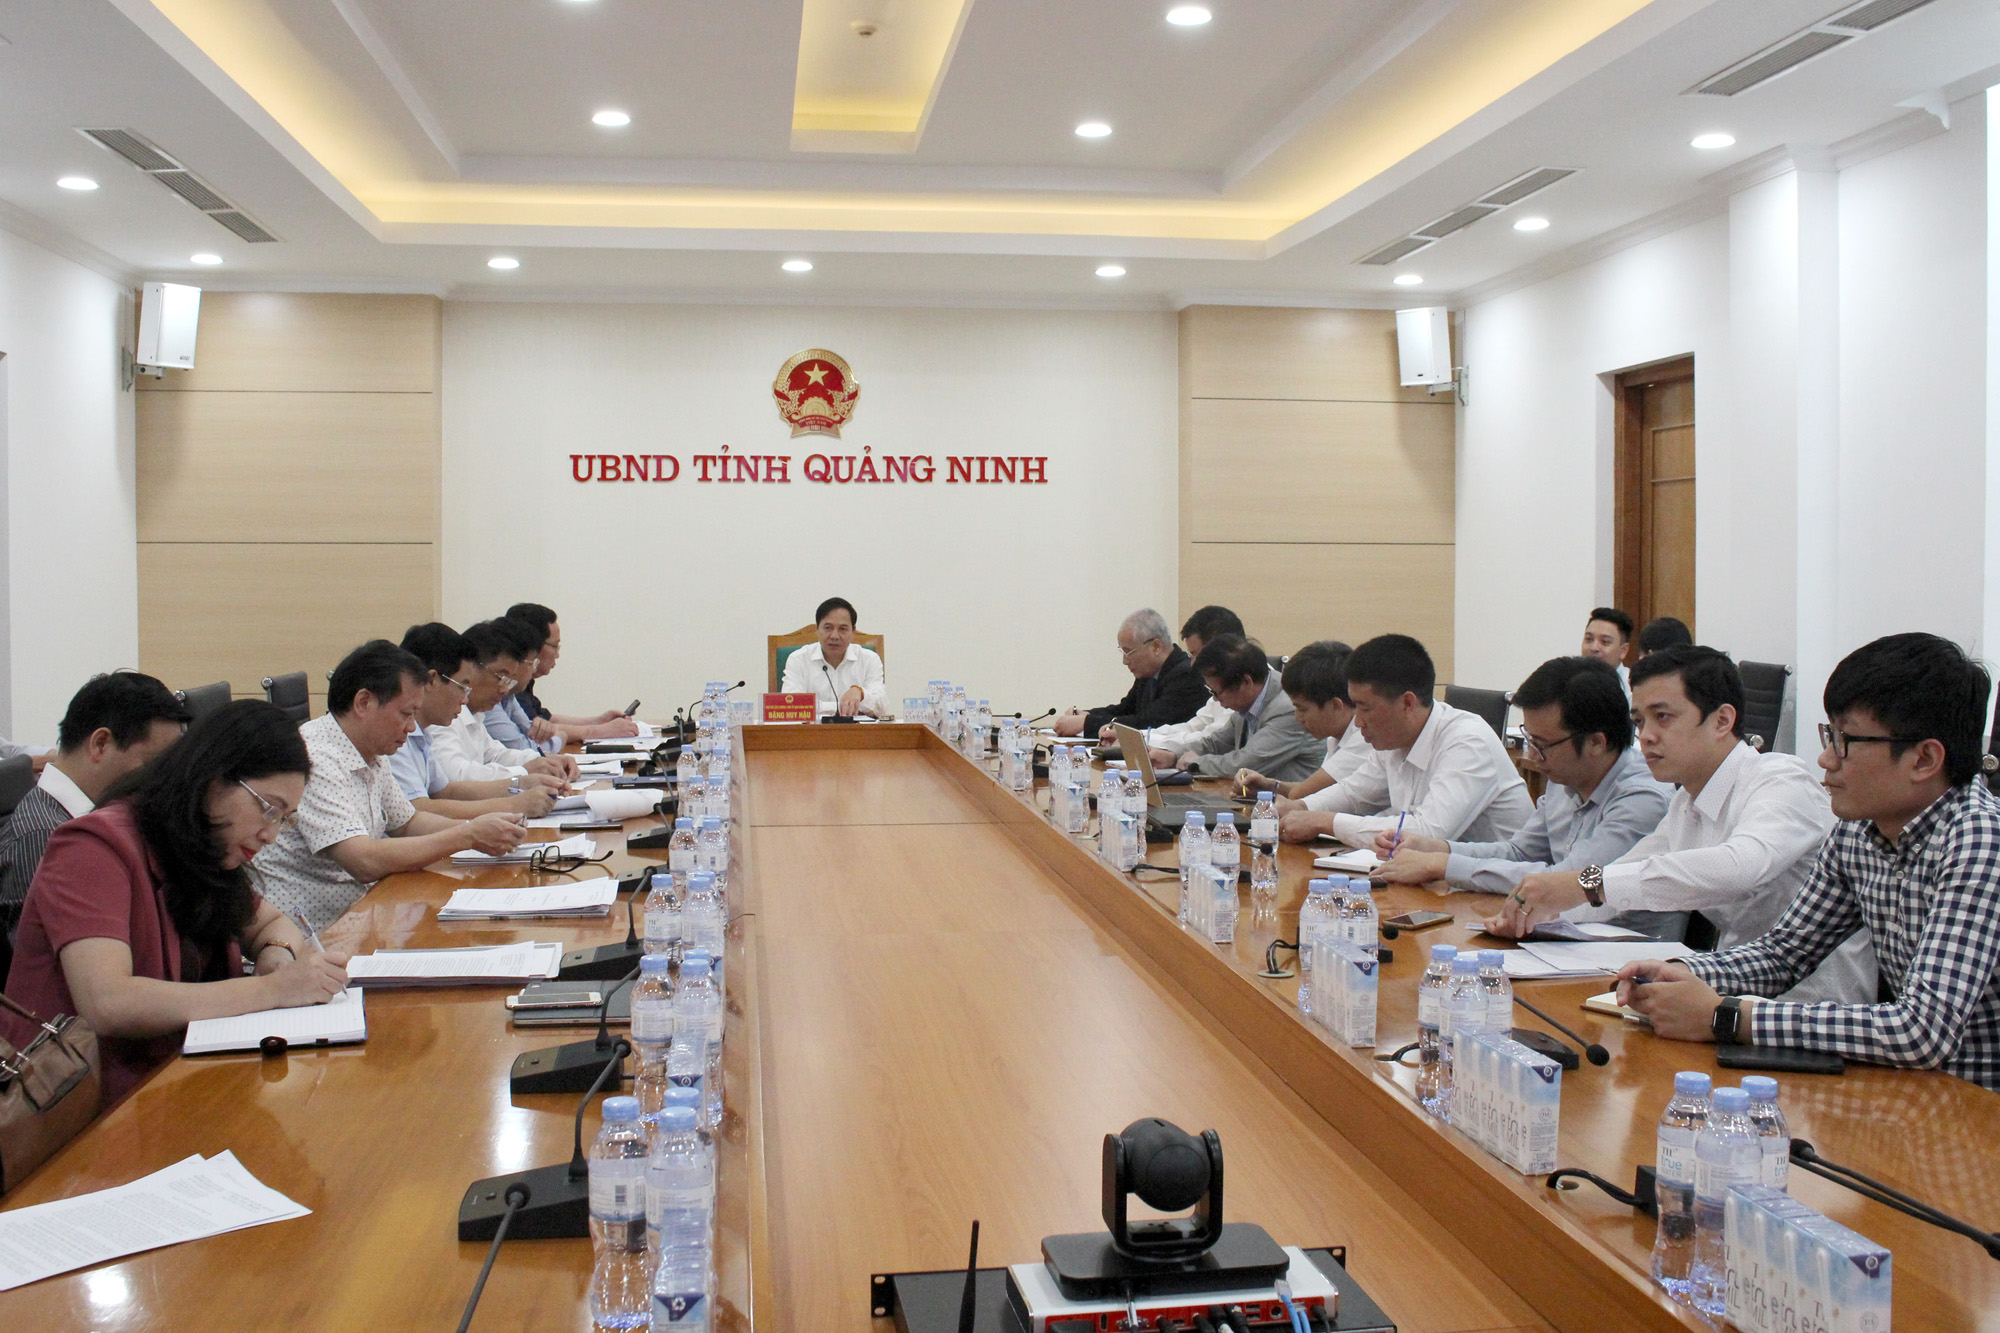 Đồng chí Đặng Huy Hậu, Phó Chủ tịch Thường trực UBND tỉnh chủ trì buổi làm việc.